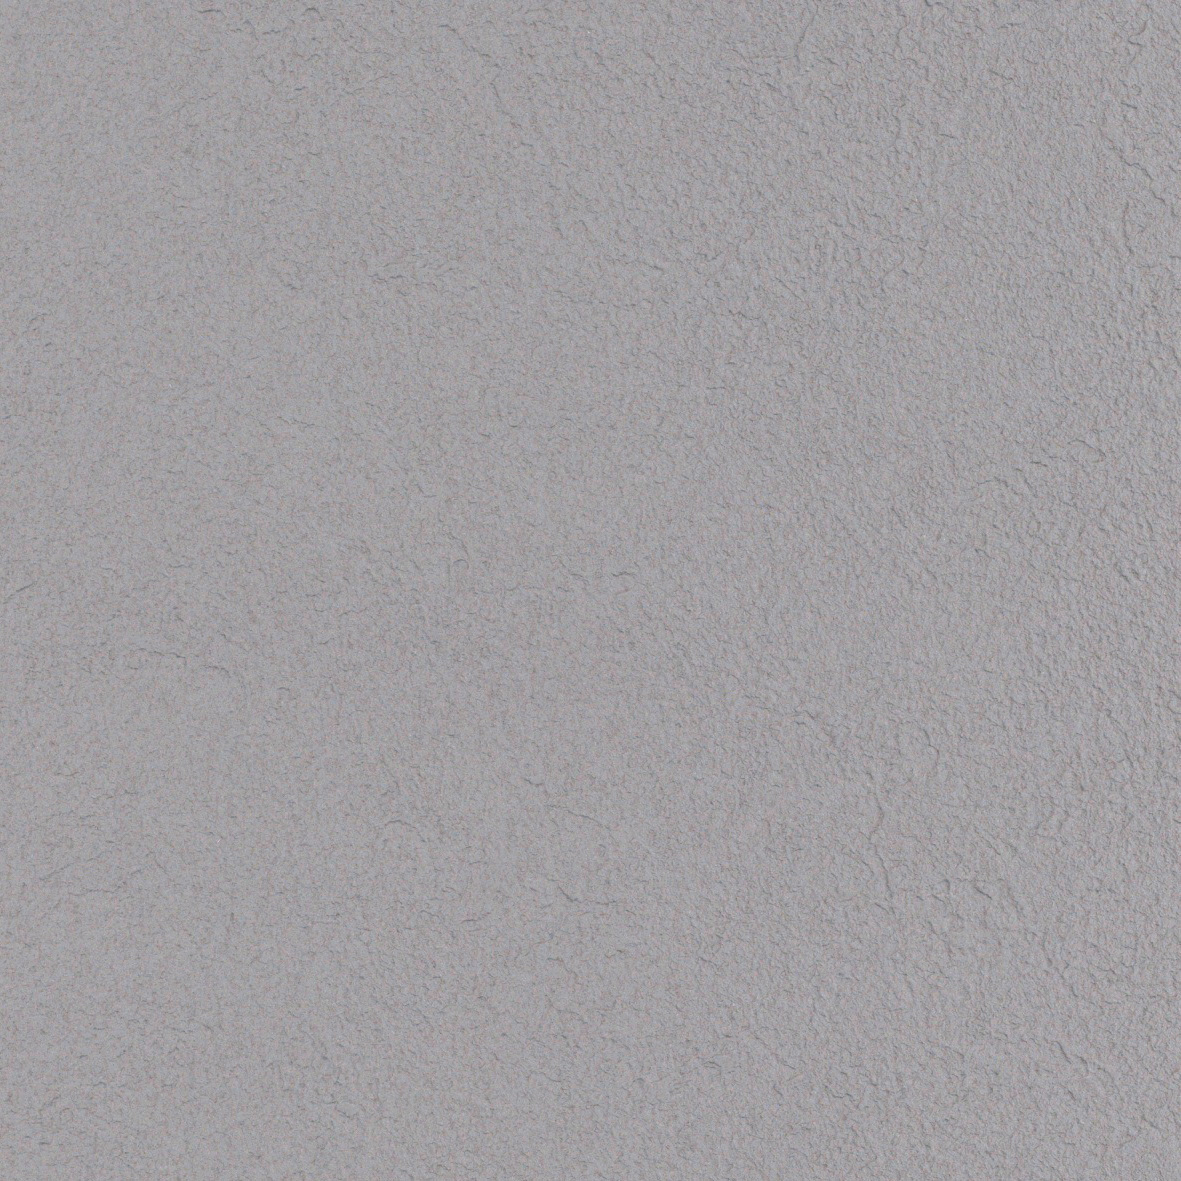 【のり付き】 LV-3444 リリカラ 壁紙/クロス 切売 リリカラ のり付き壁紙/クロス